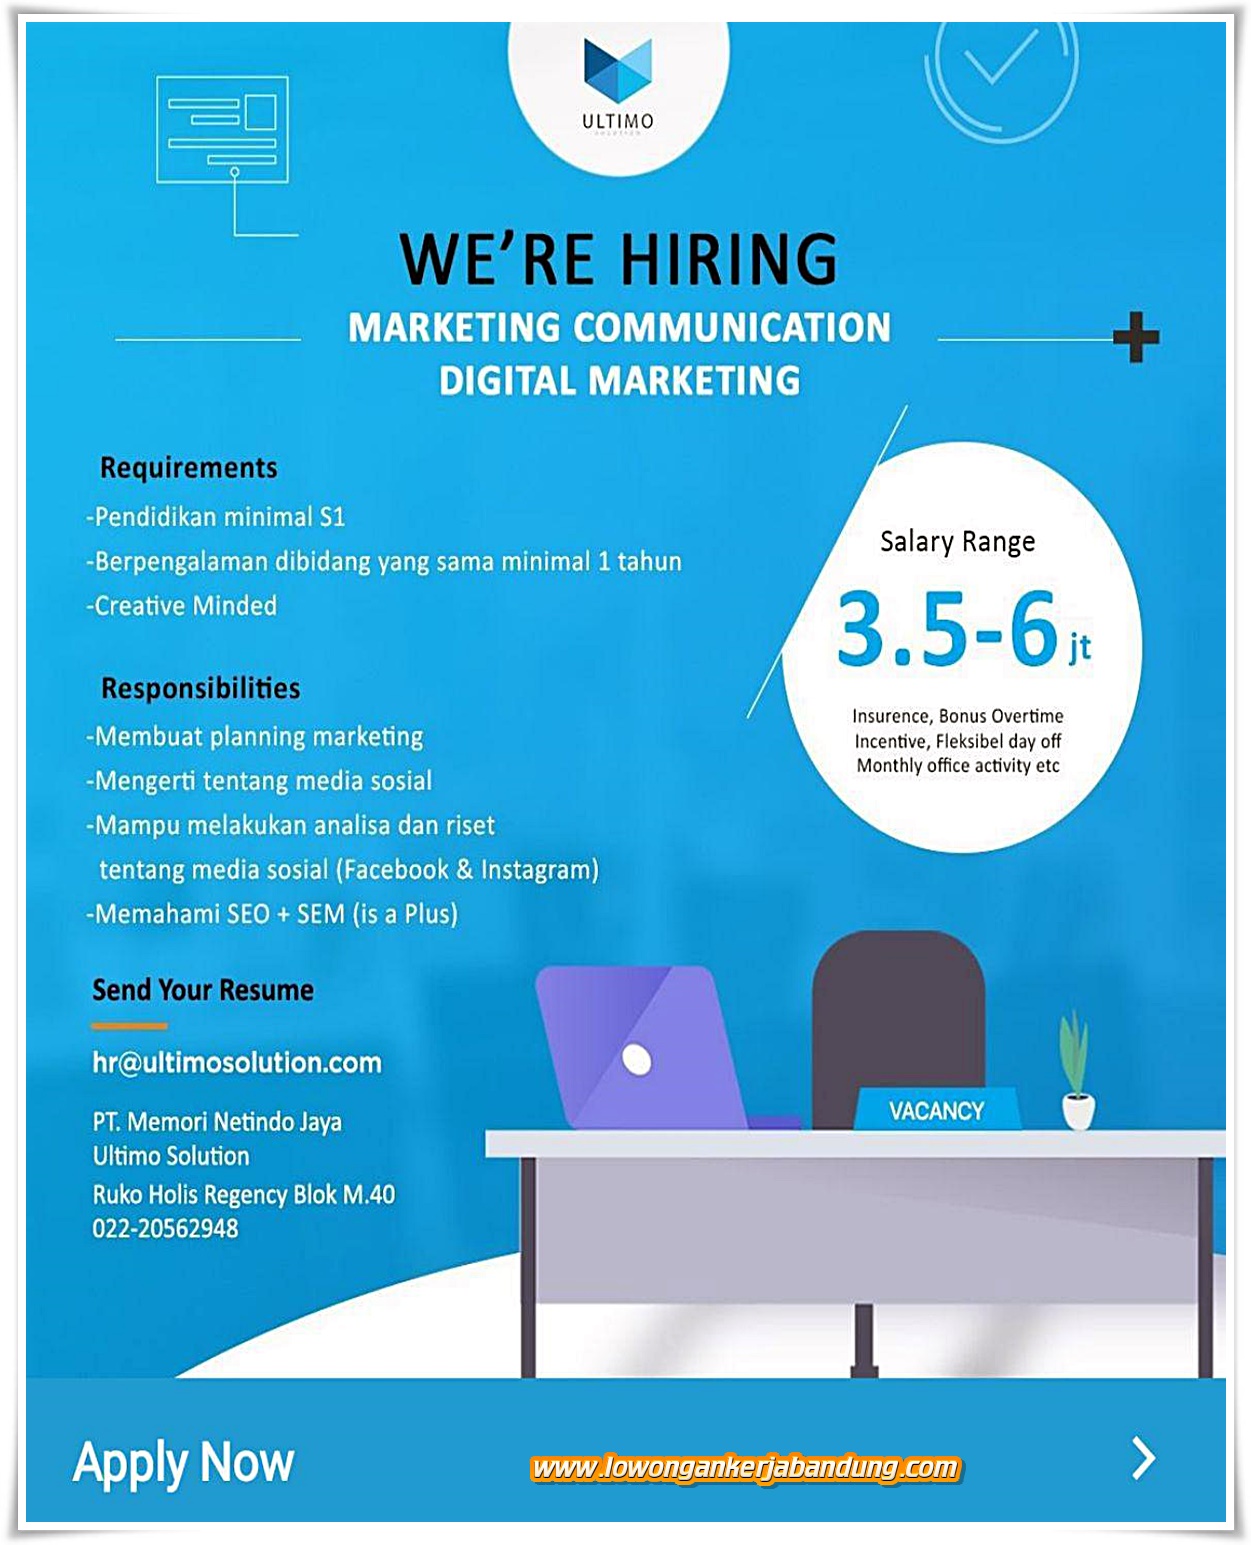 Lowongan Kerja Marcom Digital Marketing Ultimo - Lowongan Kerja Bandung